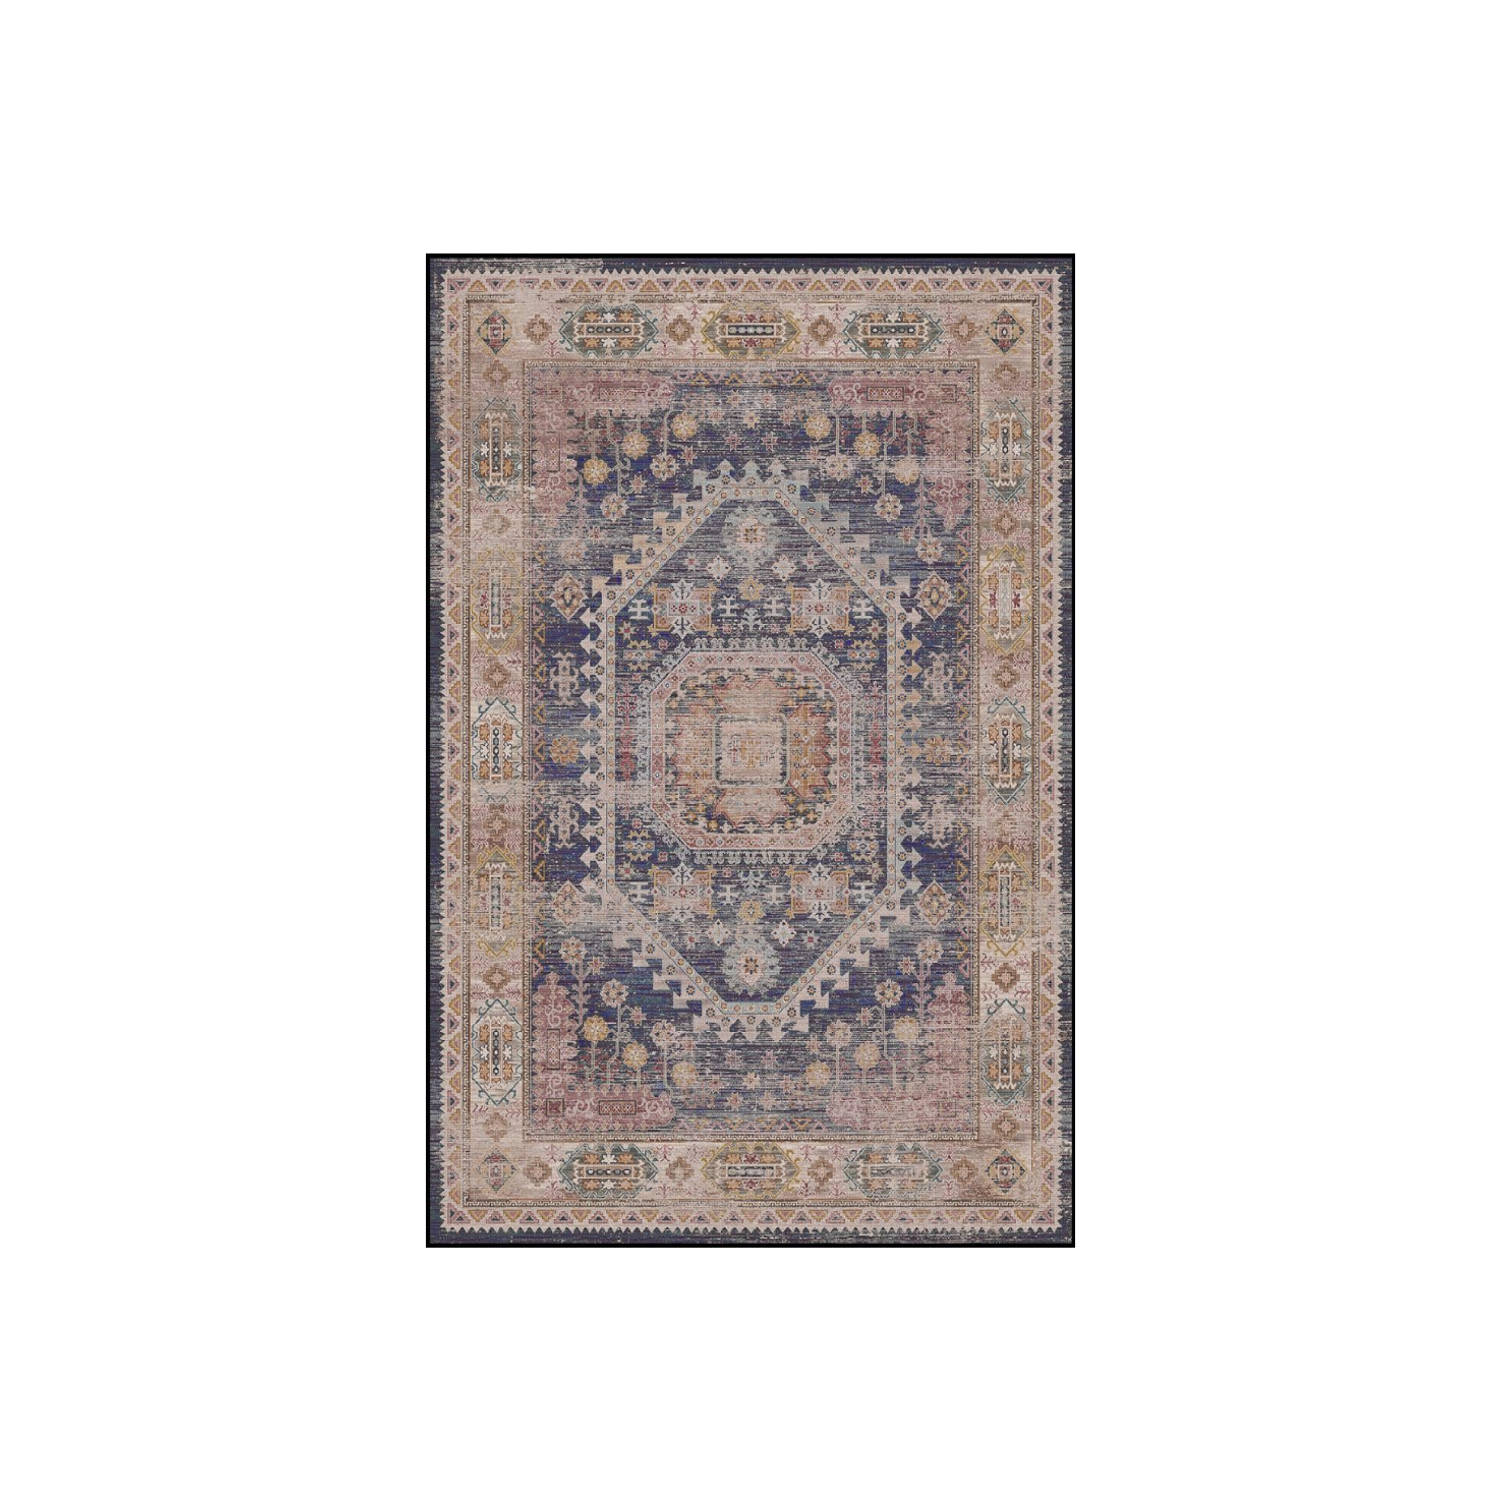 Vloerkleed vintage 70x140cm rood blauw perzisch oosters tapijt